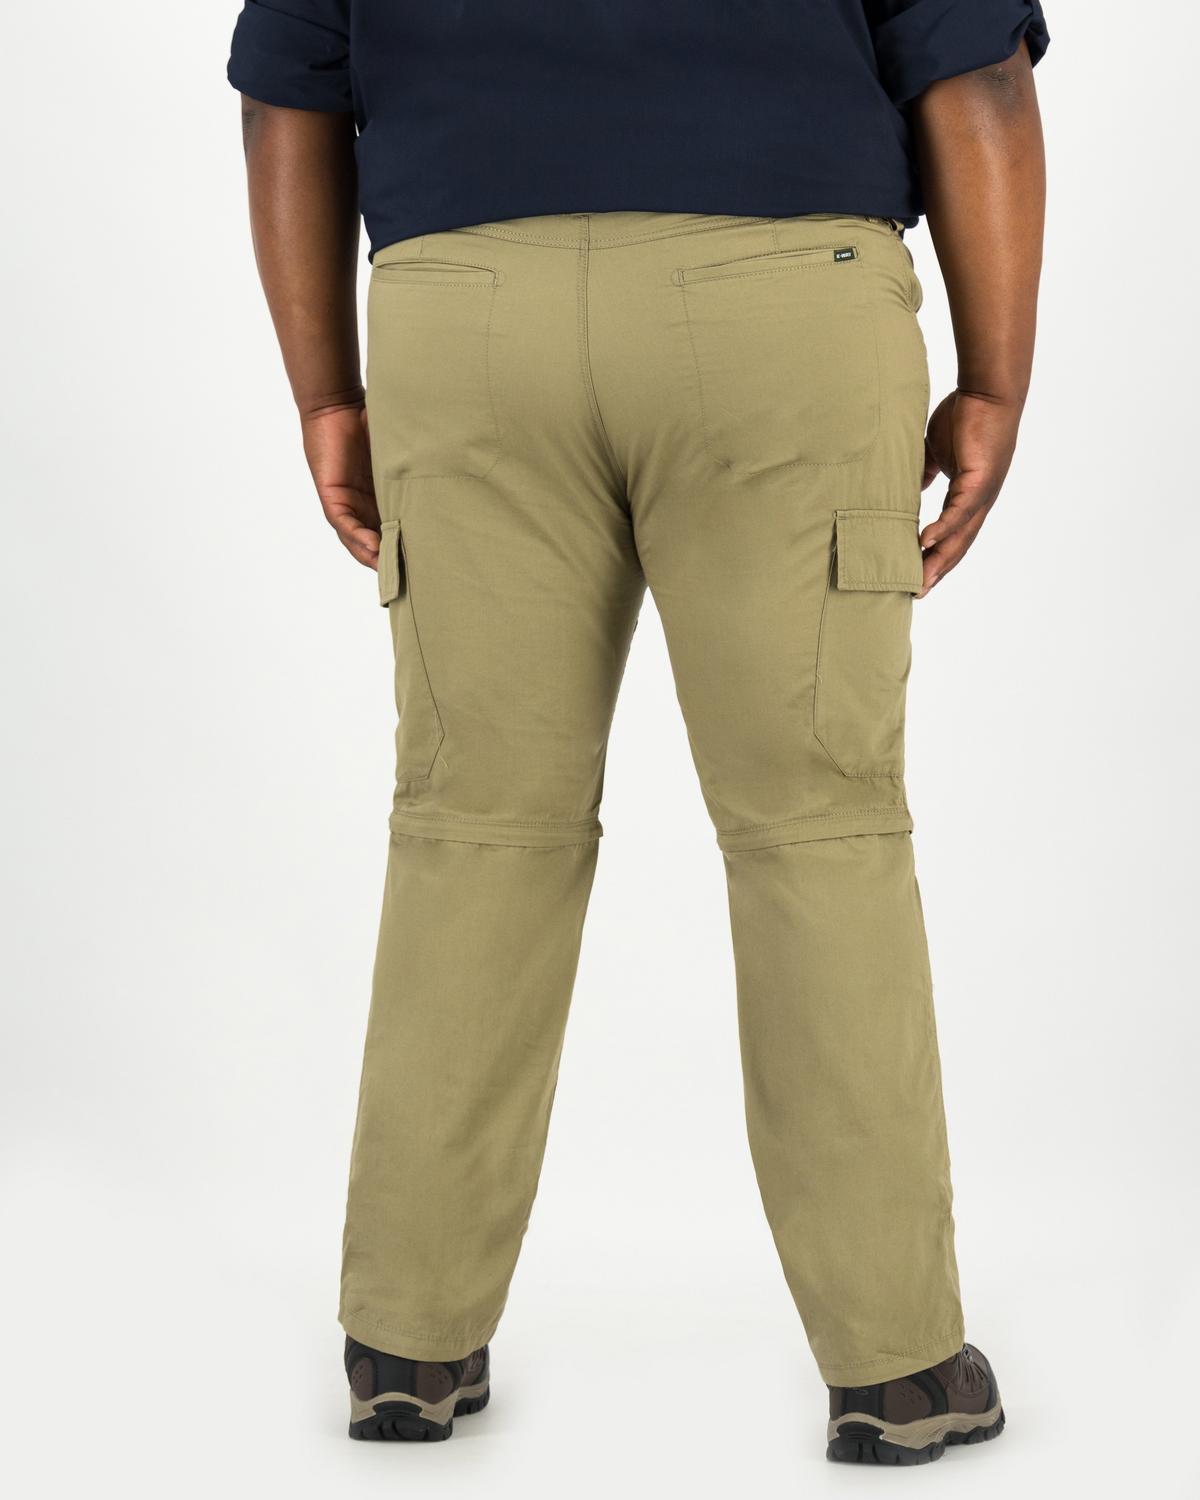 K-Way Elements Men's Safari Zip-off Pants Extended Sizes | Cape Union Mart